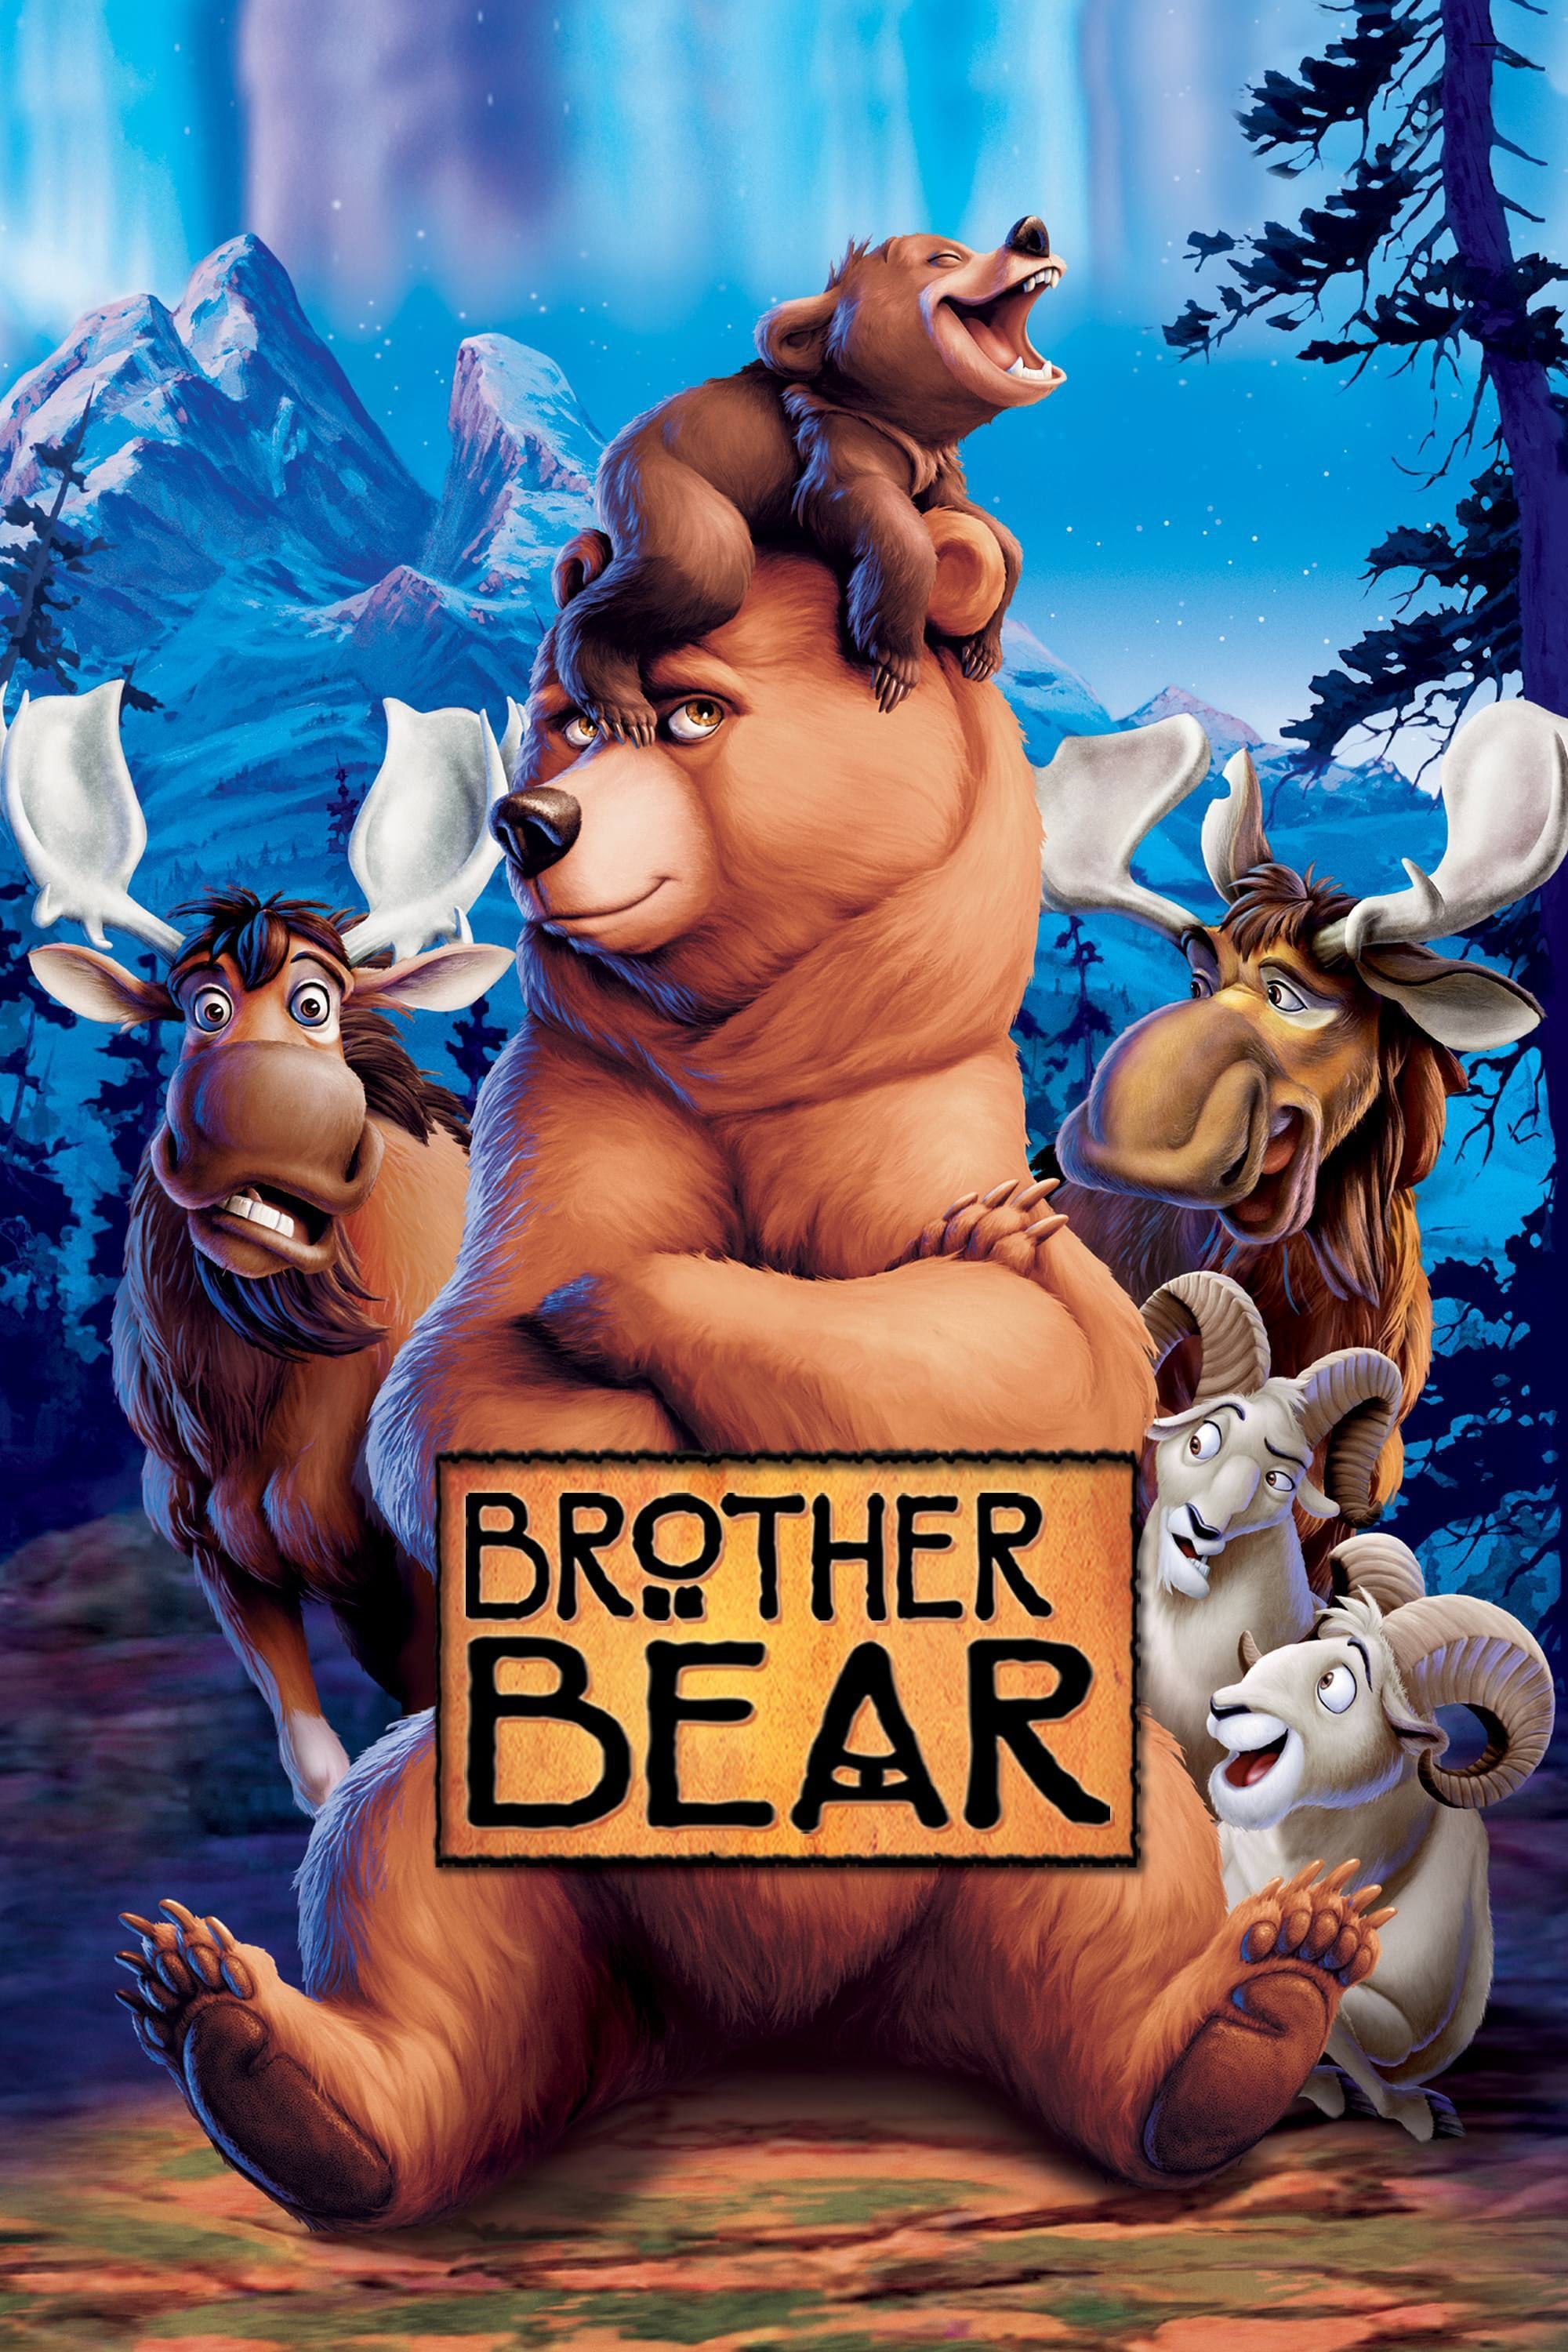 Frère des ours (2003)